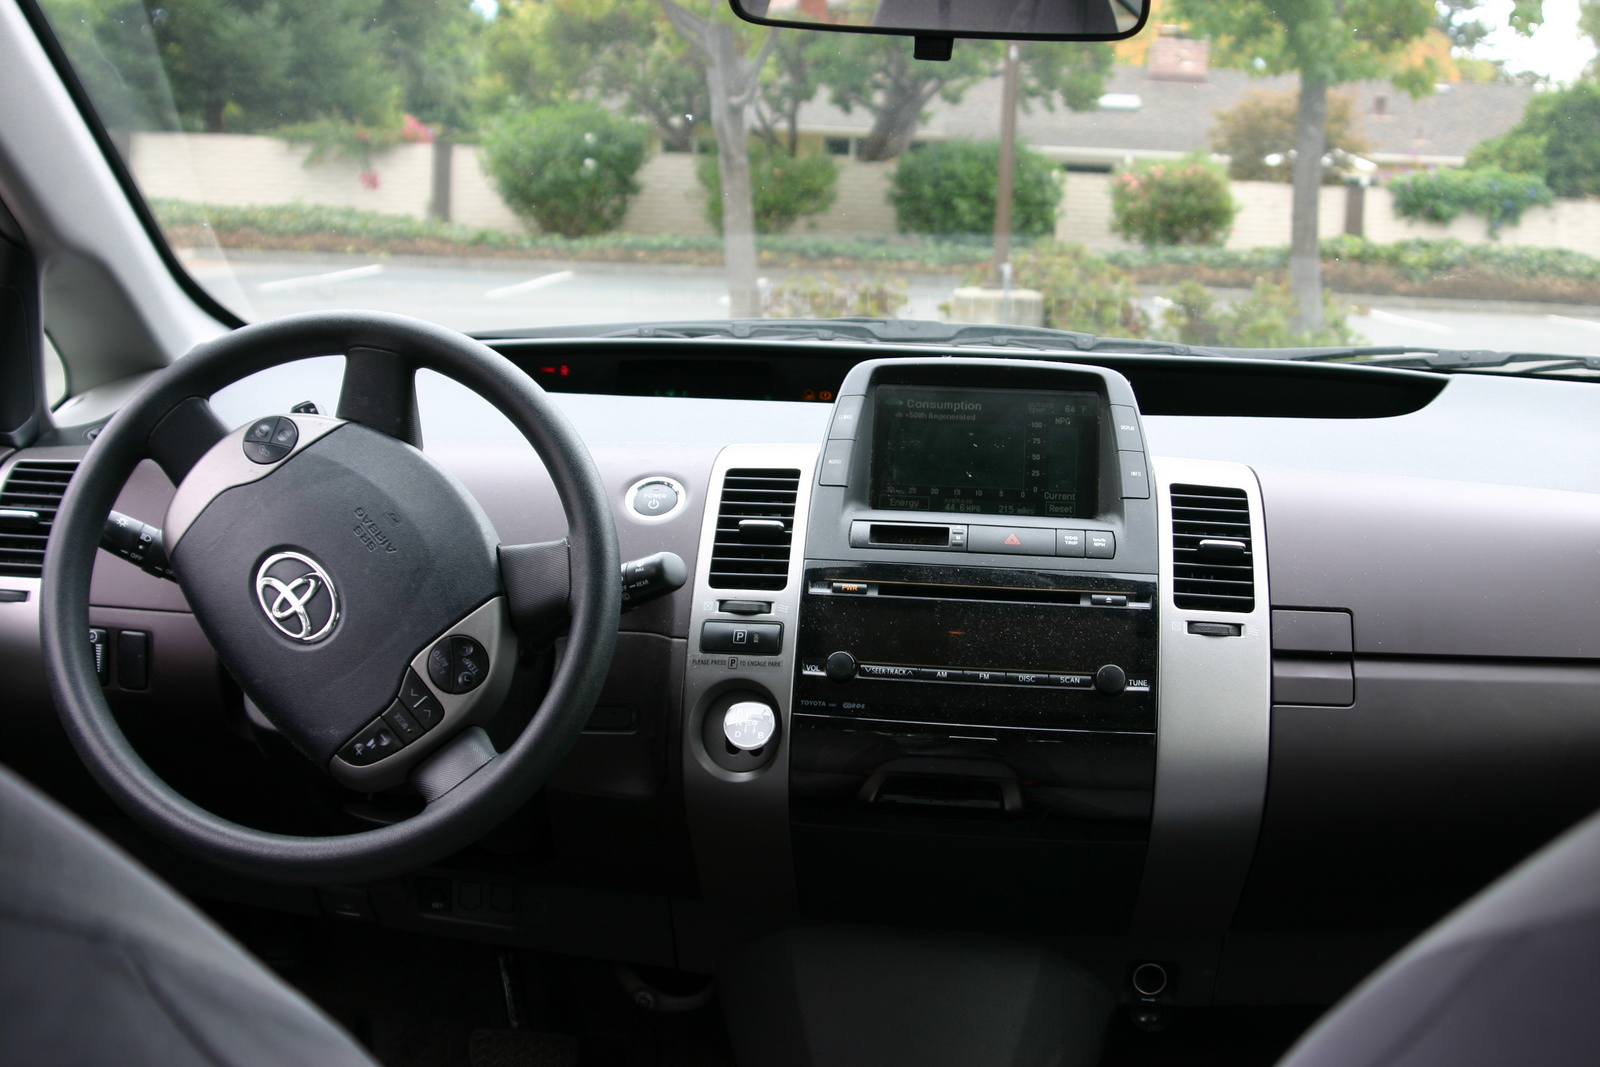 Interior of a 2005 Prius